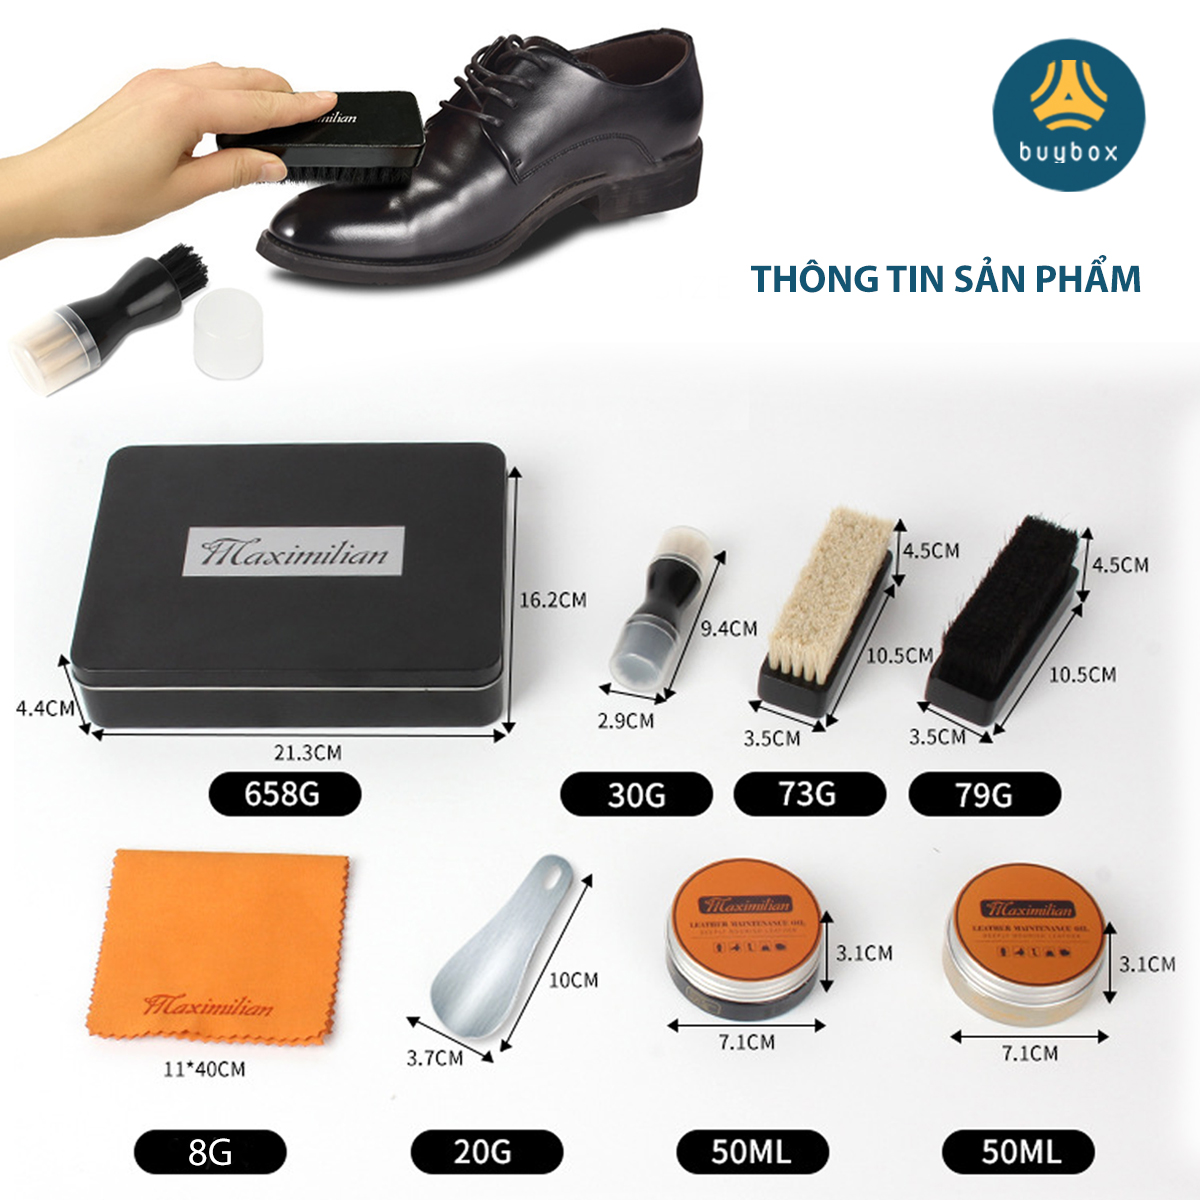 Bộ dụng cụ đánh giày da 7 món bao gồm xi và đủ bộ bàn chải, có tặng kèm hộp bảo quản giày da sạch sẽ - Buybox - BBPK292